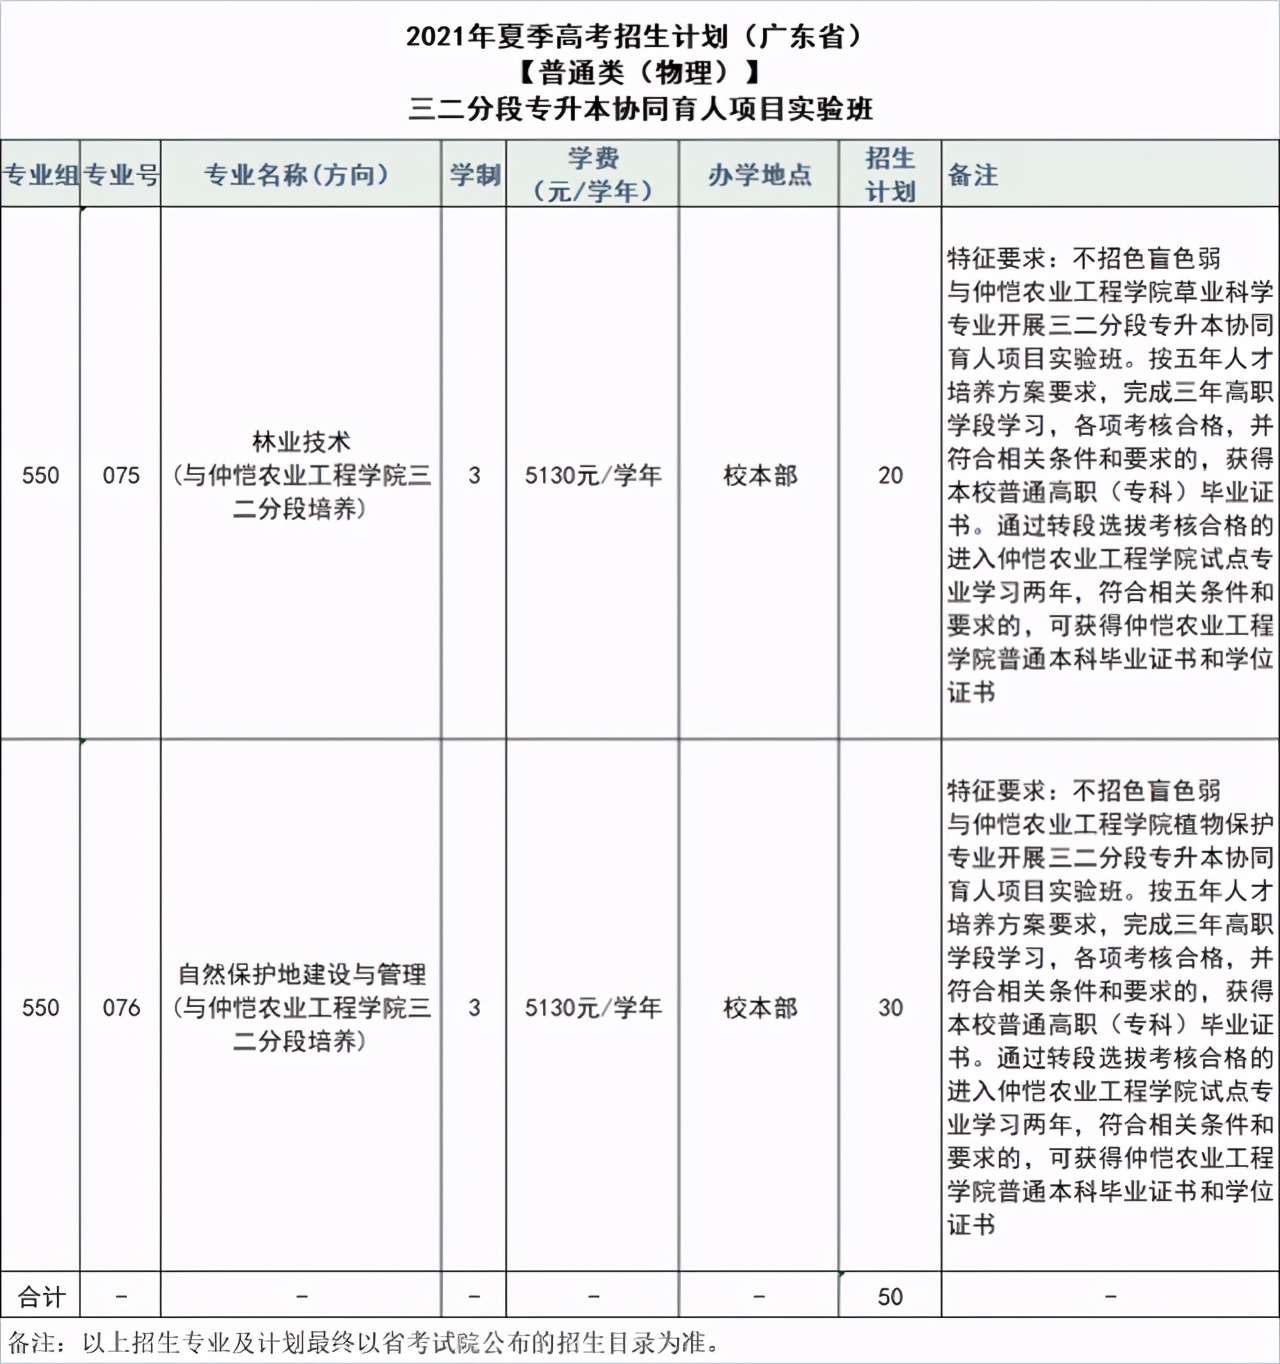 广东生态工程职业学院2021年夏季高考招生简章